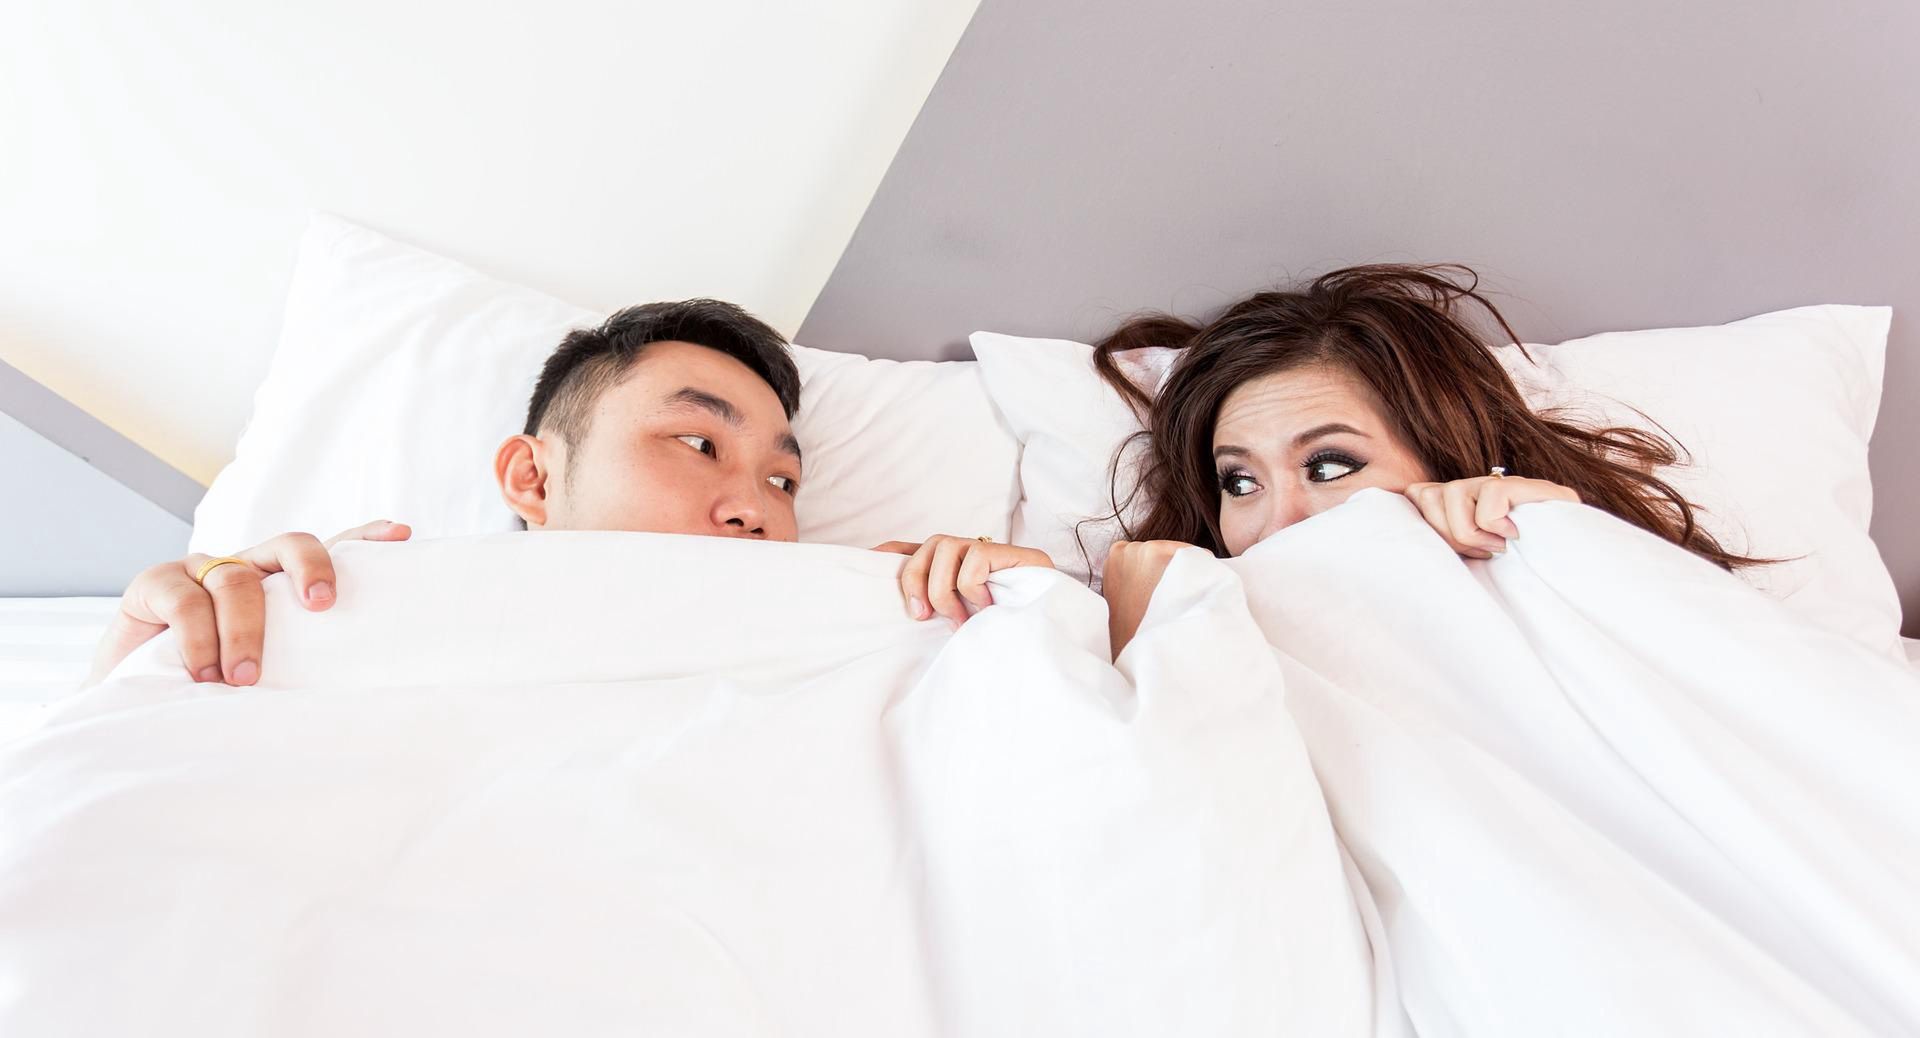 Gdy mąż i żona śpią osobno to źle? Kobieta opowiedziała o swojej sytuacji